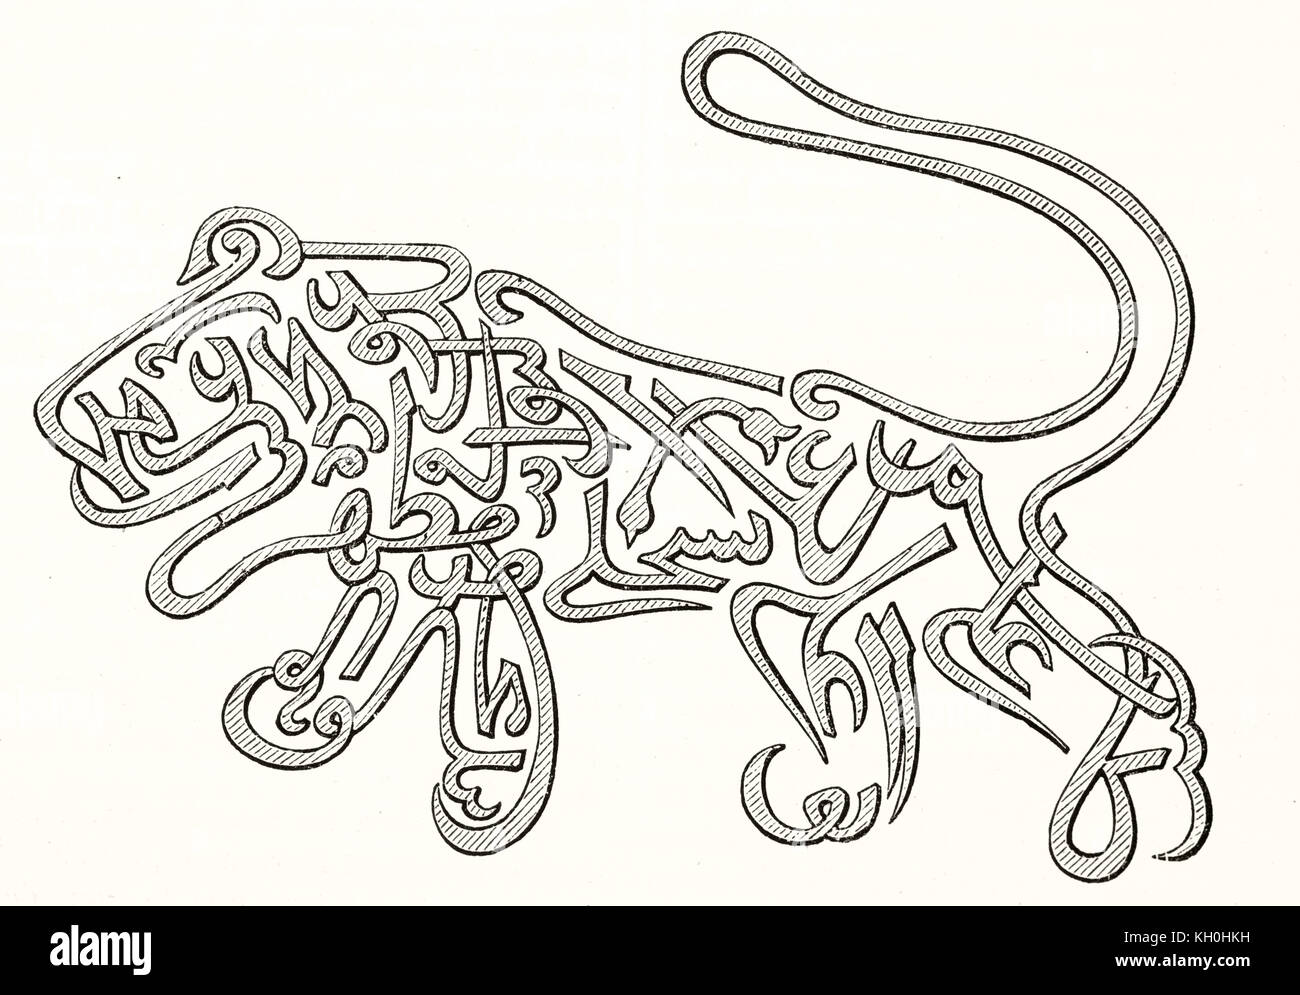 Vecchia riproduzione inciso di arabi talismano raffigurante un leone. Da autore non identificato, publ. su Magasin pittoresco, Parigi, 1847 Foto Stock